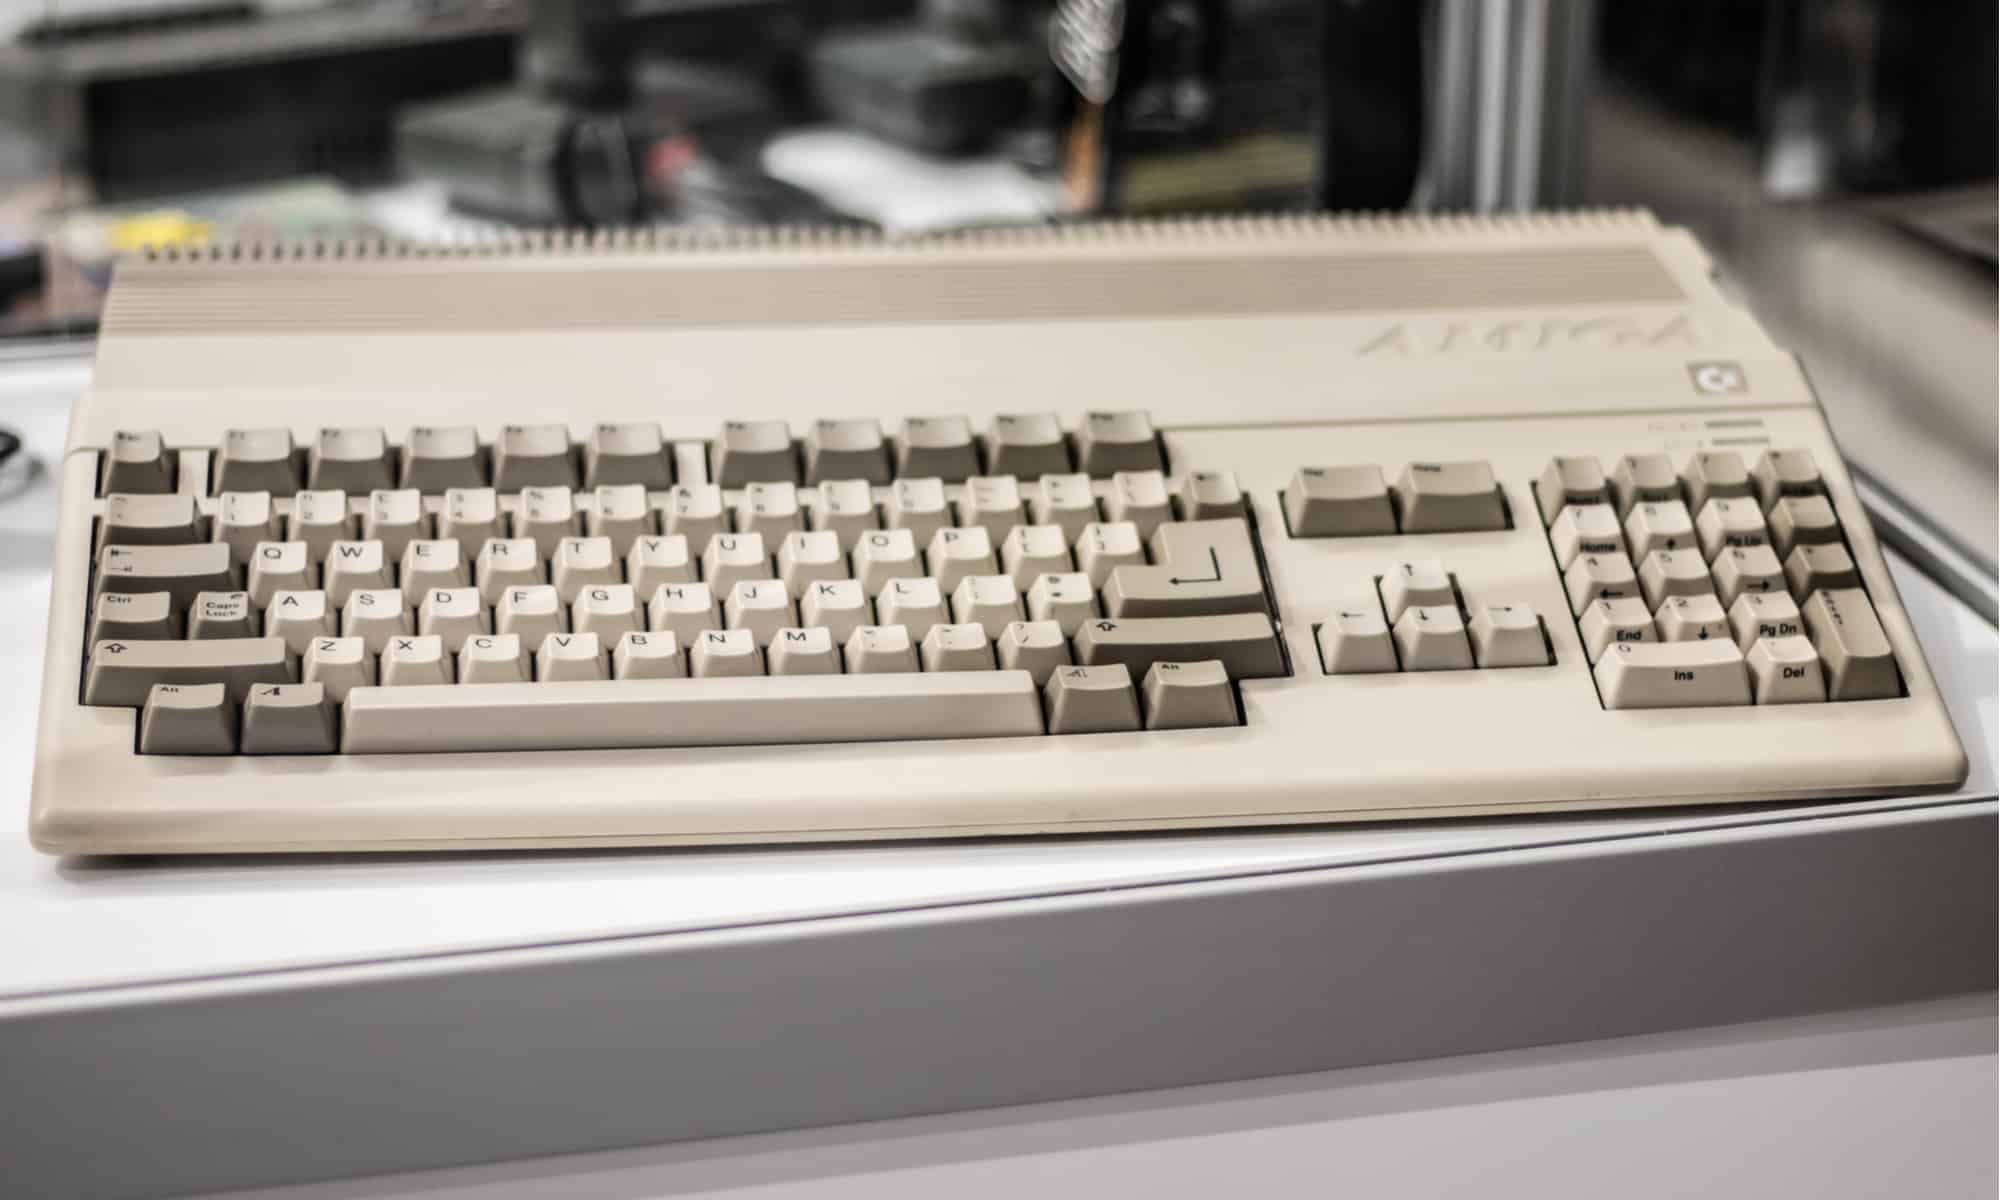 Amiga 500 keyboard